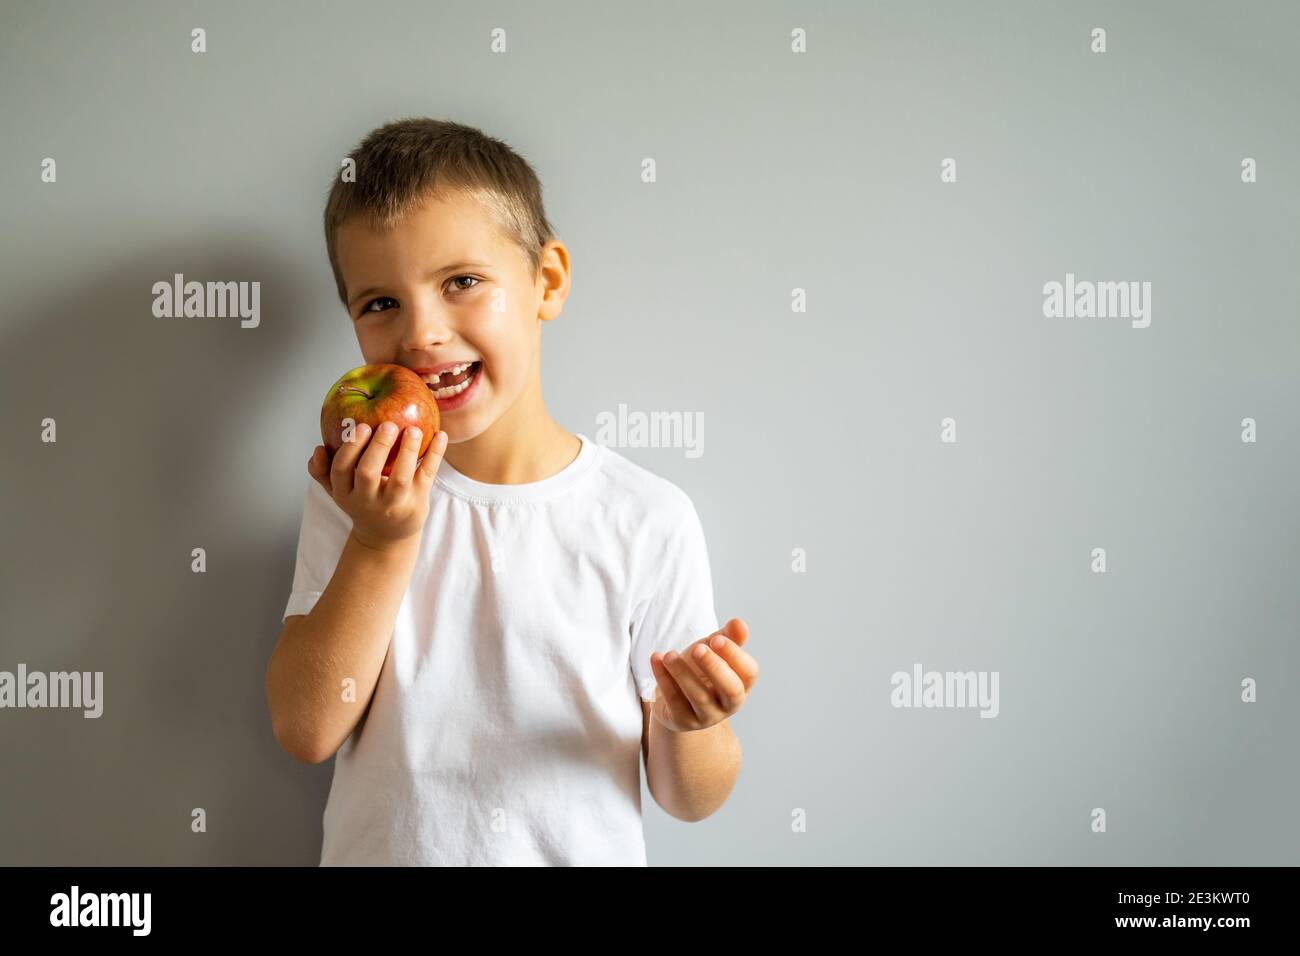 Junge ohne Milch Oberzahn in weißem T-Shirt hält einen Apfel in der Hand auf dem grauen Hintergrund. Stockfoto